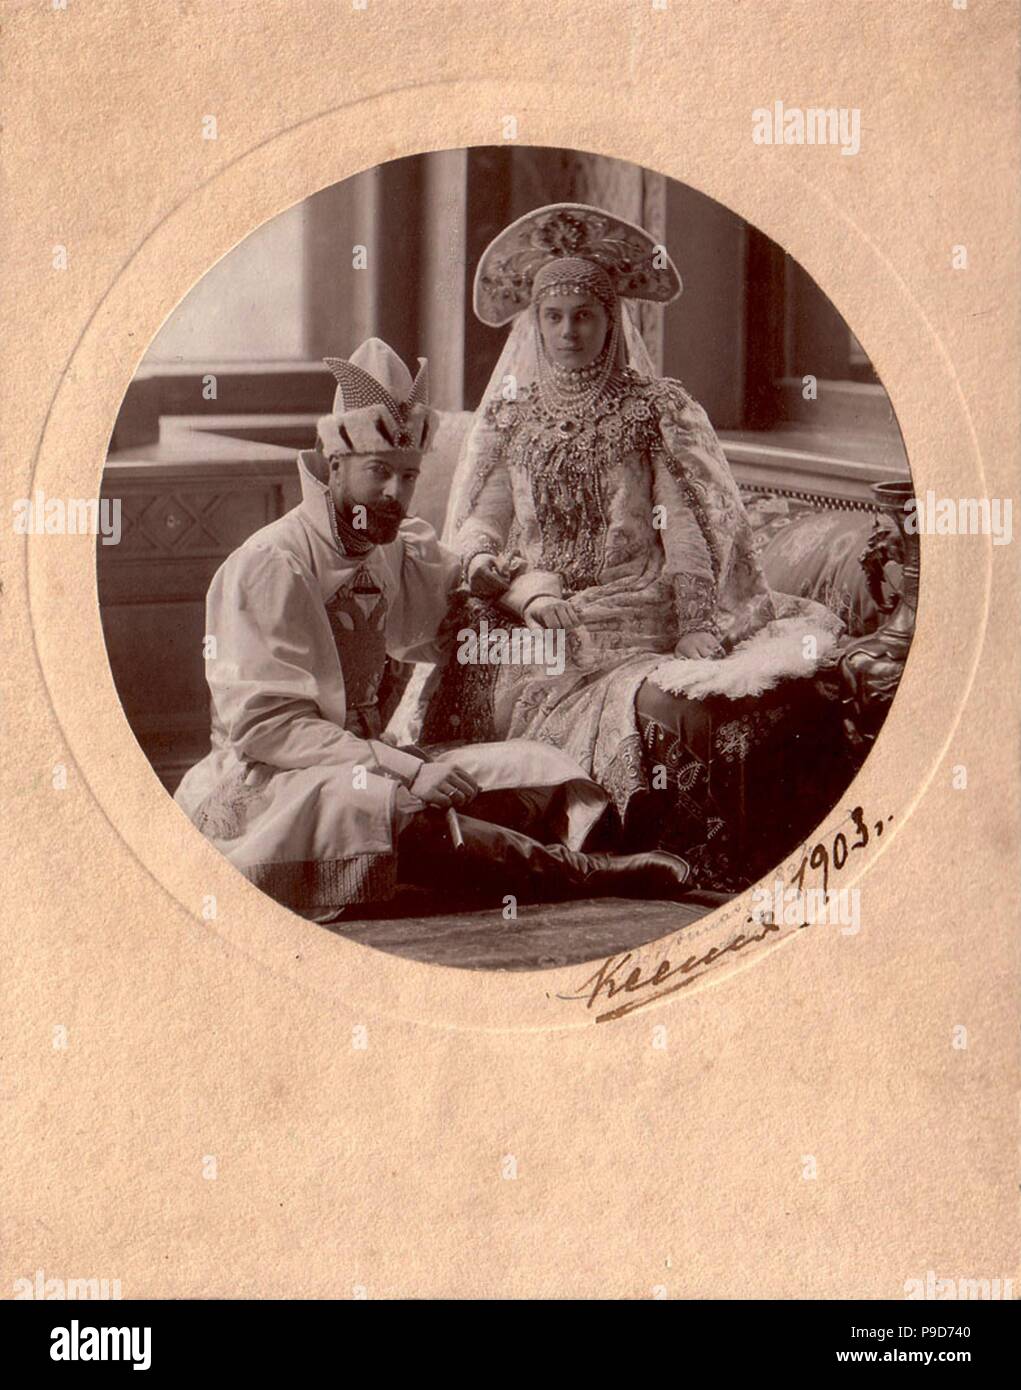 Grand-duc Alexandre Mikhaïlovitch de Russie avec son épouse, la grande-duchesse Xenia Alexandrovna de Russie. Musée : collection privée. Banque D'Images